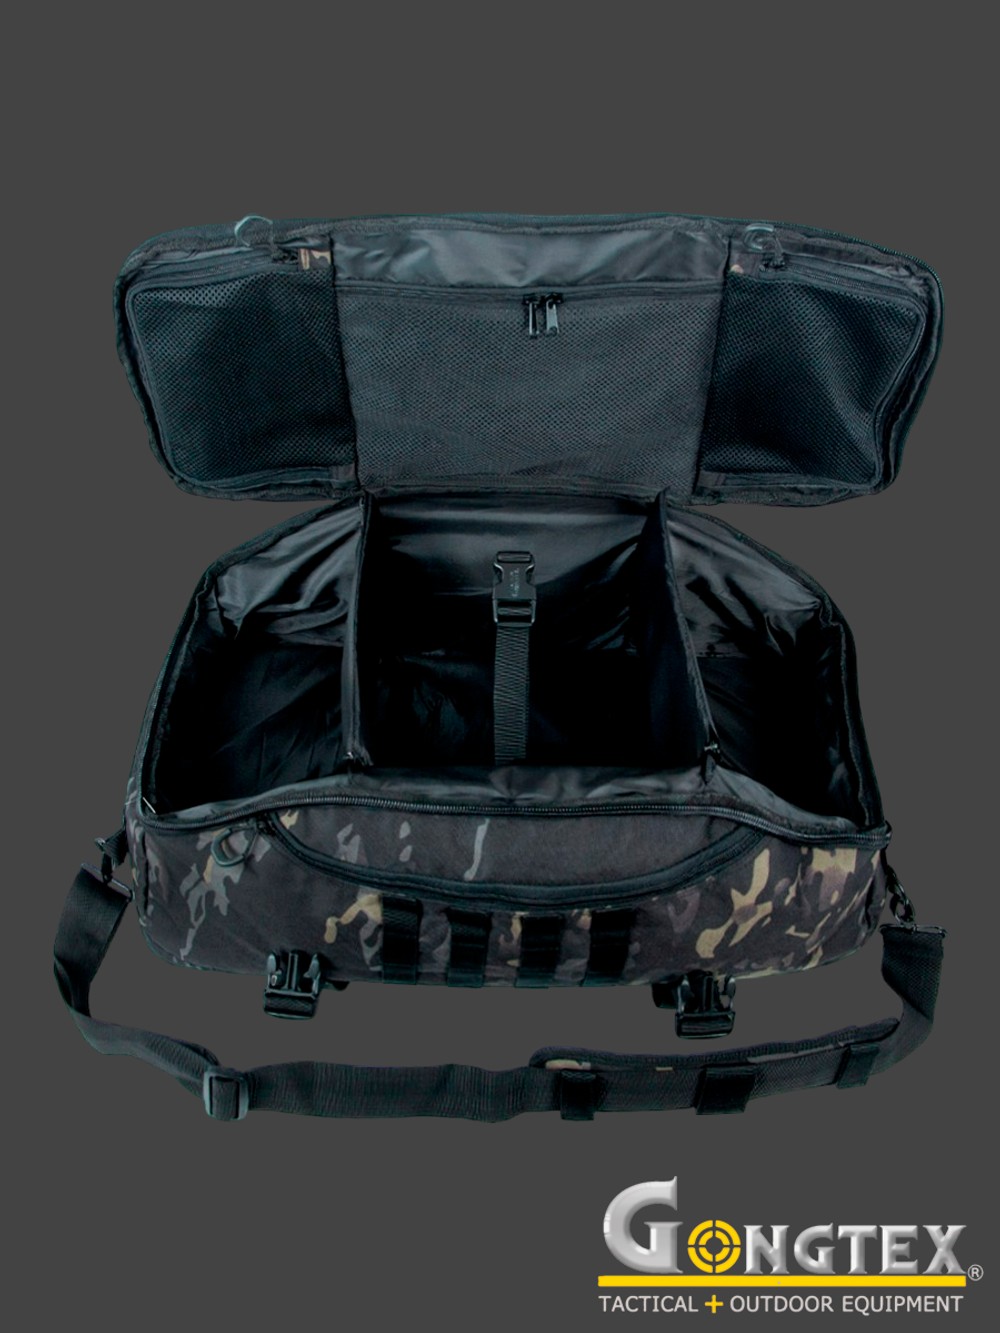 Баул Gongtex Traveller Duffle Backpack, 55 л (0308). MultiСam Black